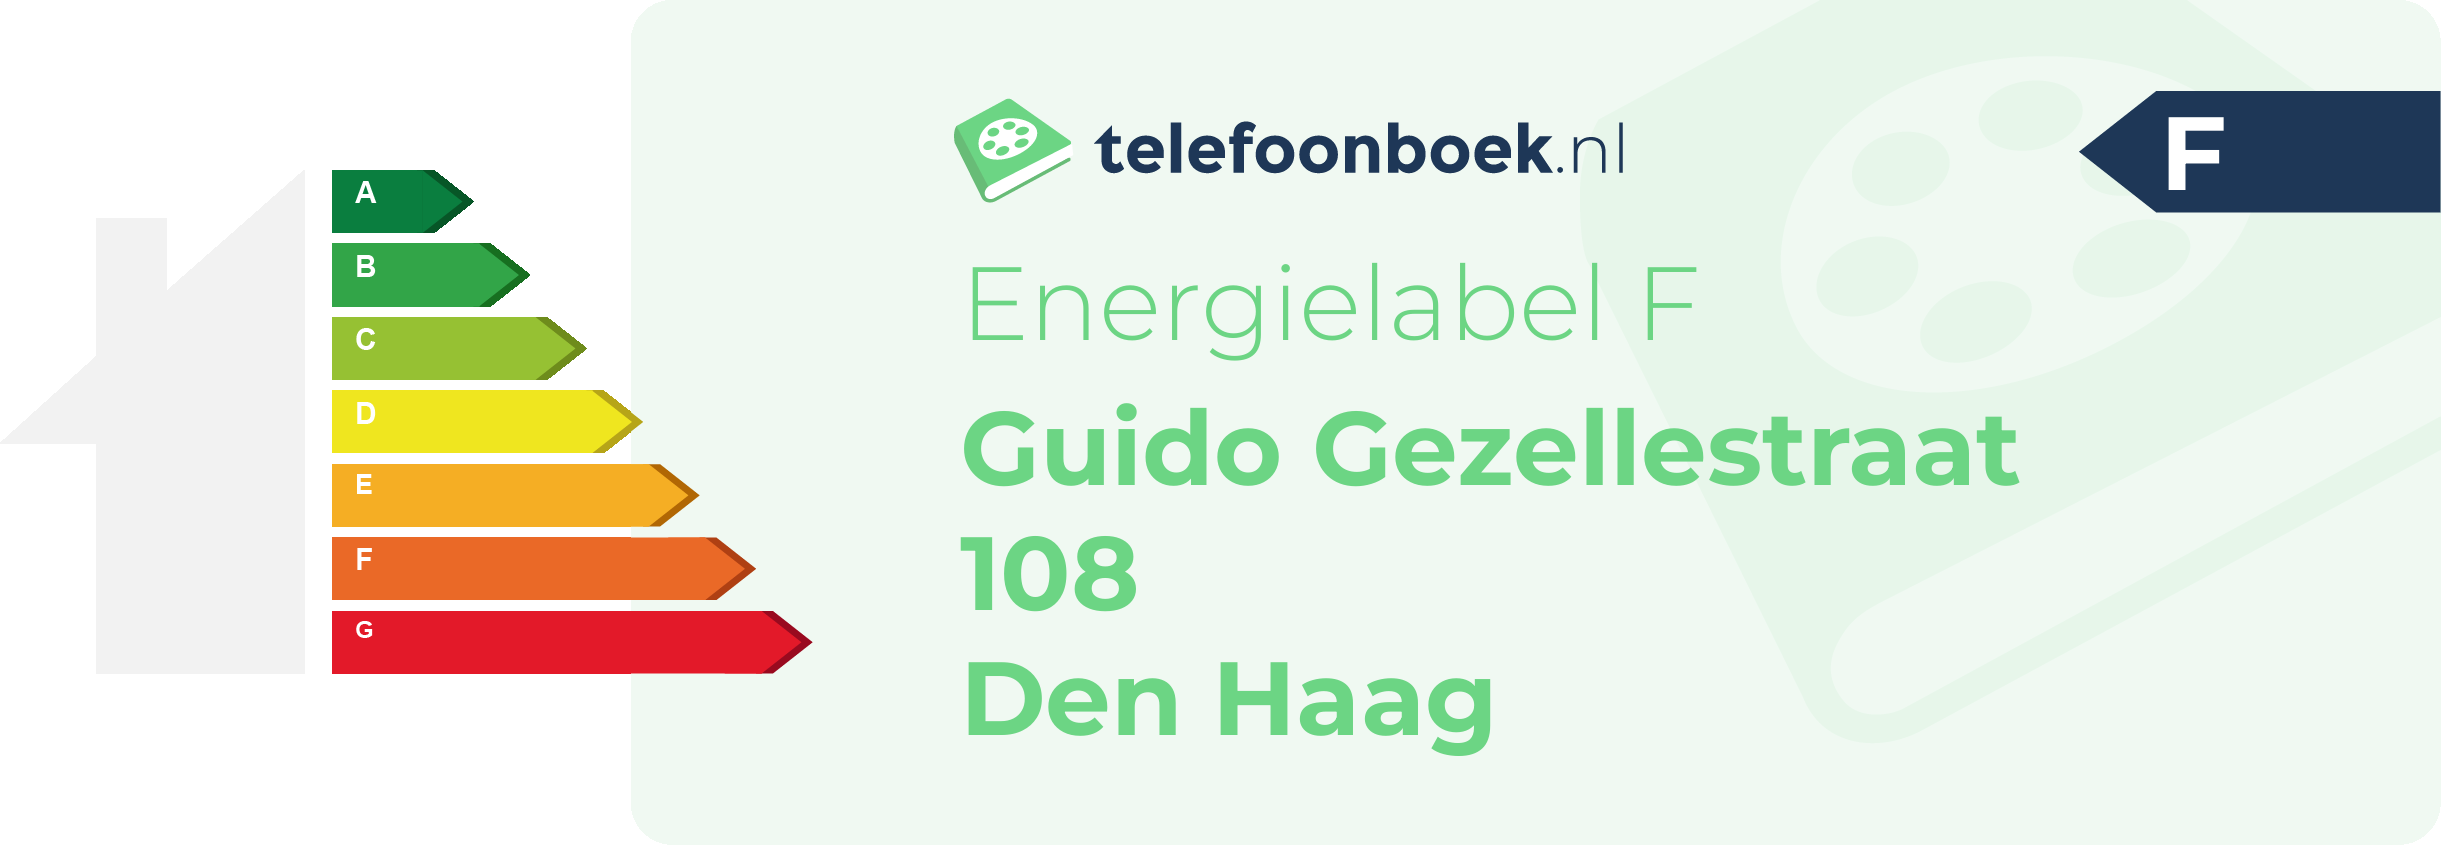 Energielabel Guido Gezellestraat 108 Den Haag